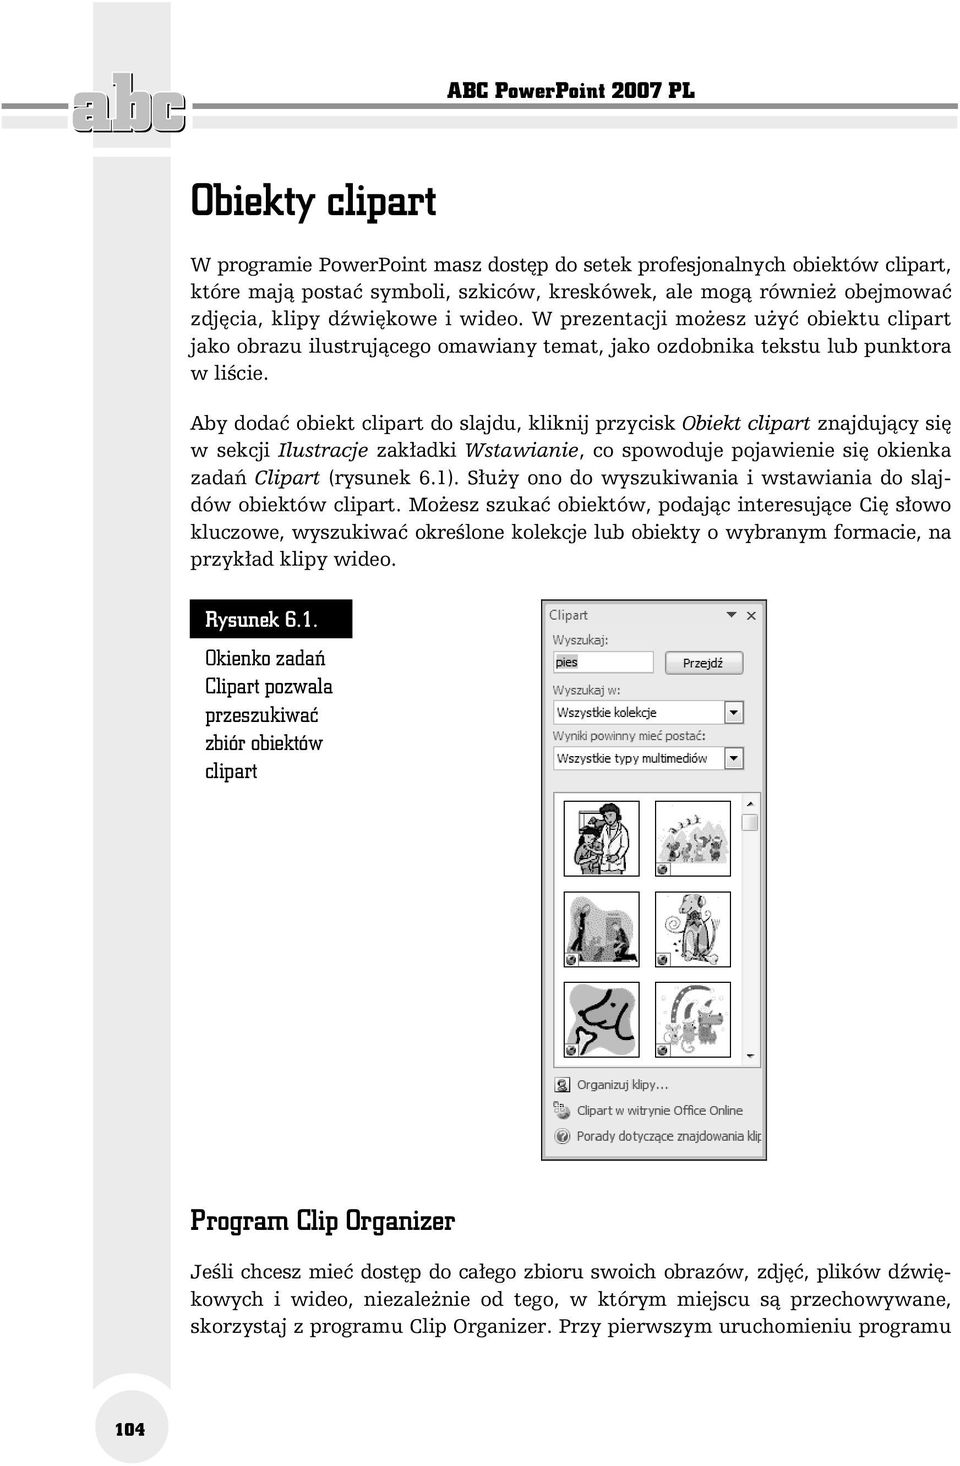 Aby dodać obiekt clipart do slajdu, kliknij przycisk Obiekt clipart znajdujący się w sekcji Ilustracje zakładki Wstawianie, co spowoduje pojawienie się okienka zadań Clipart (rysunek 6.1).